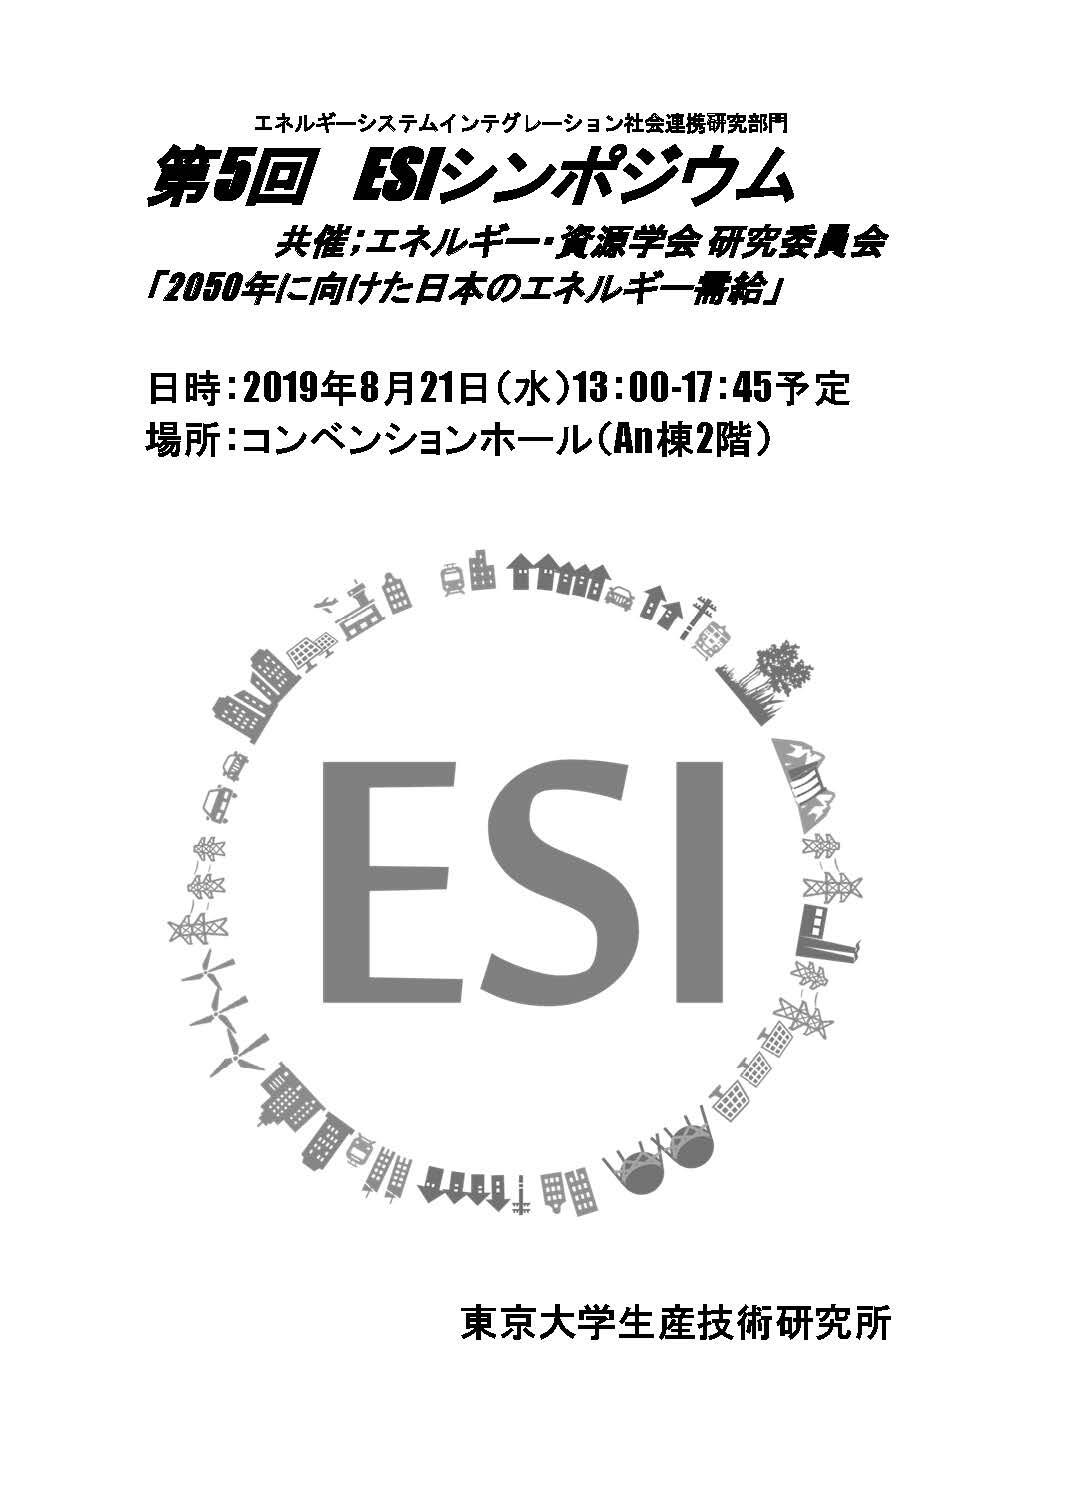 esi-symposium-20190821.jpg